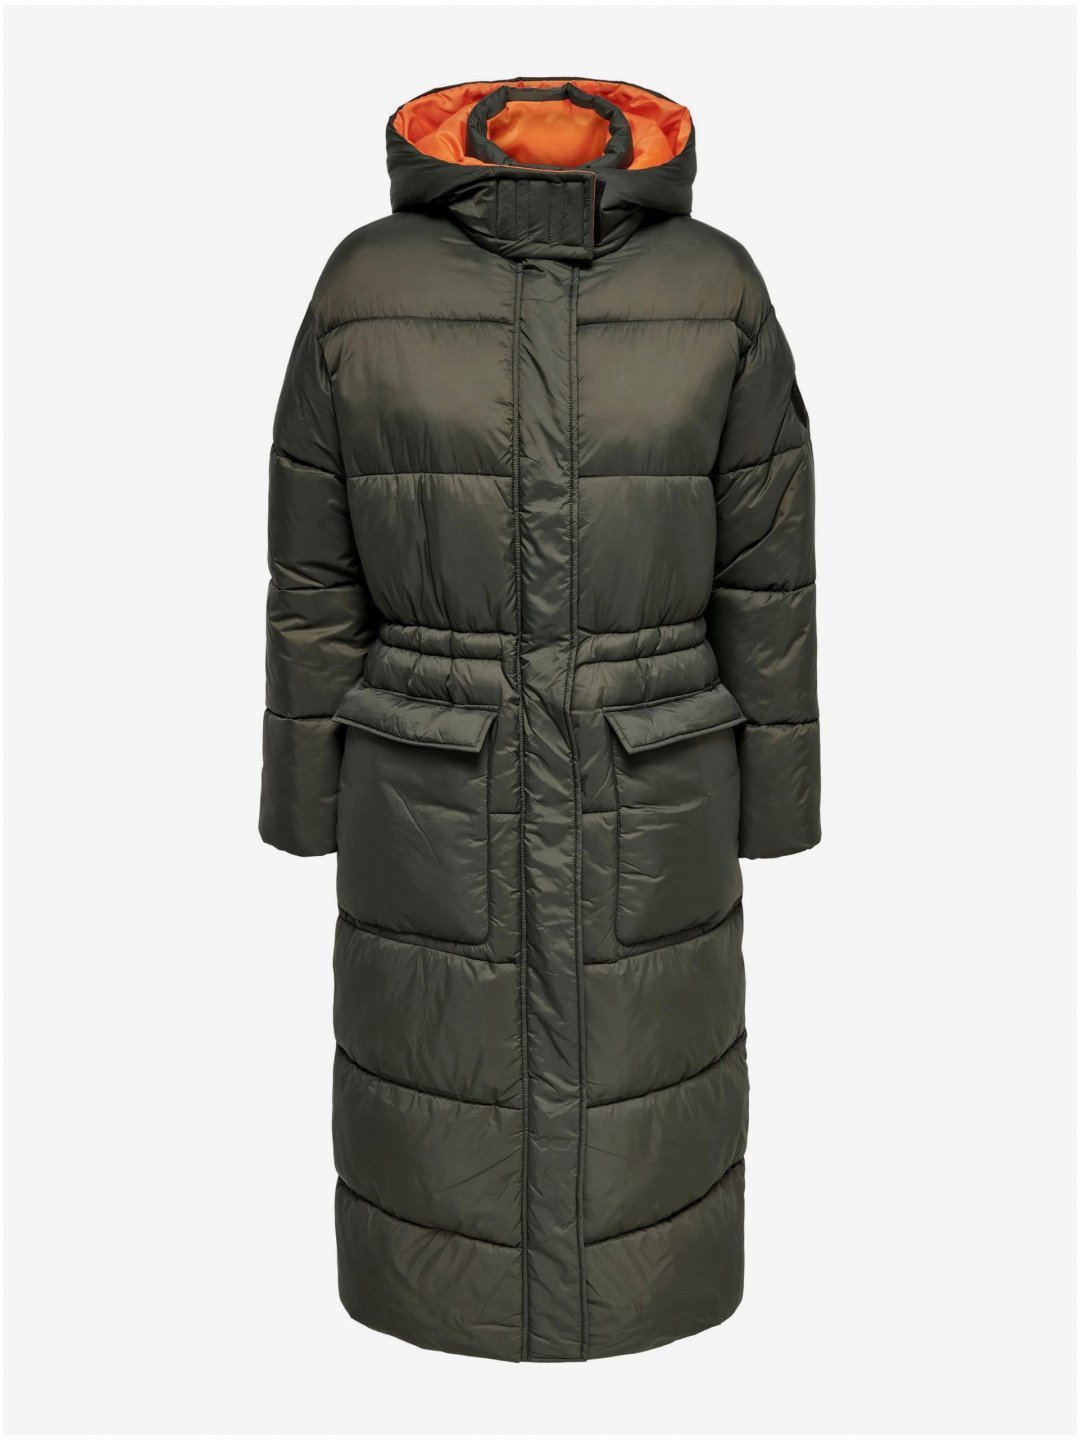 Khaki dámský prošívaný zimní kabát s kapucí ONLY Puk